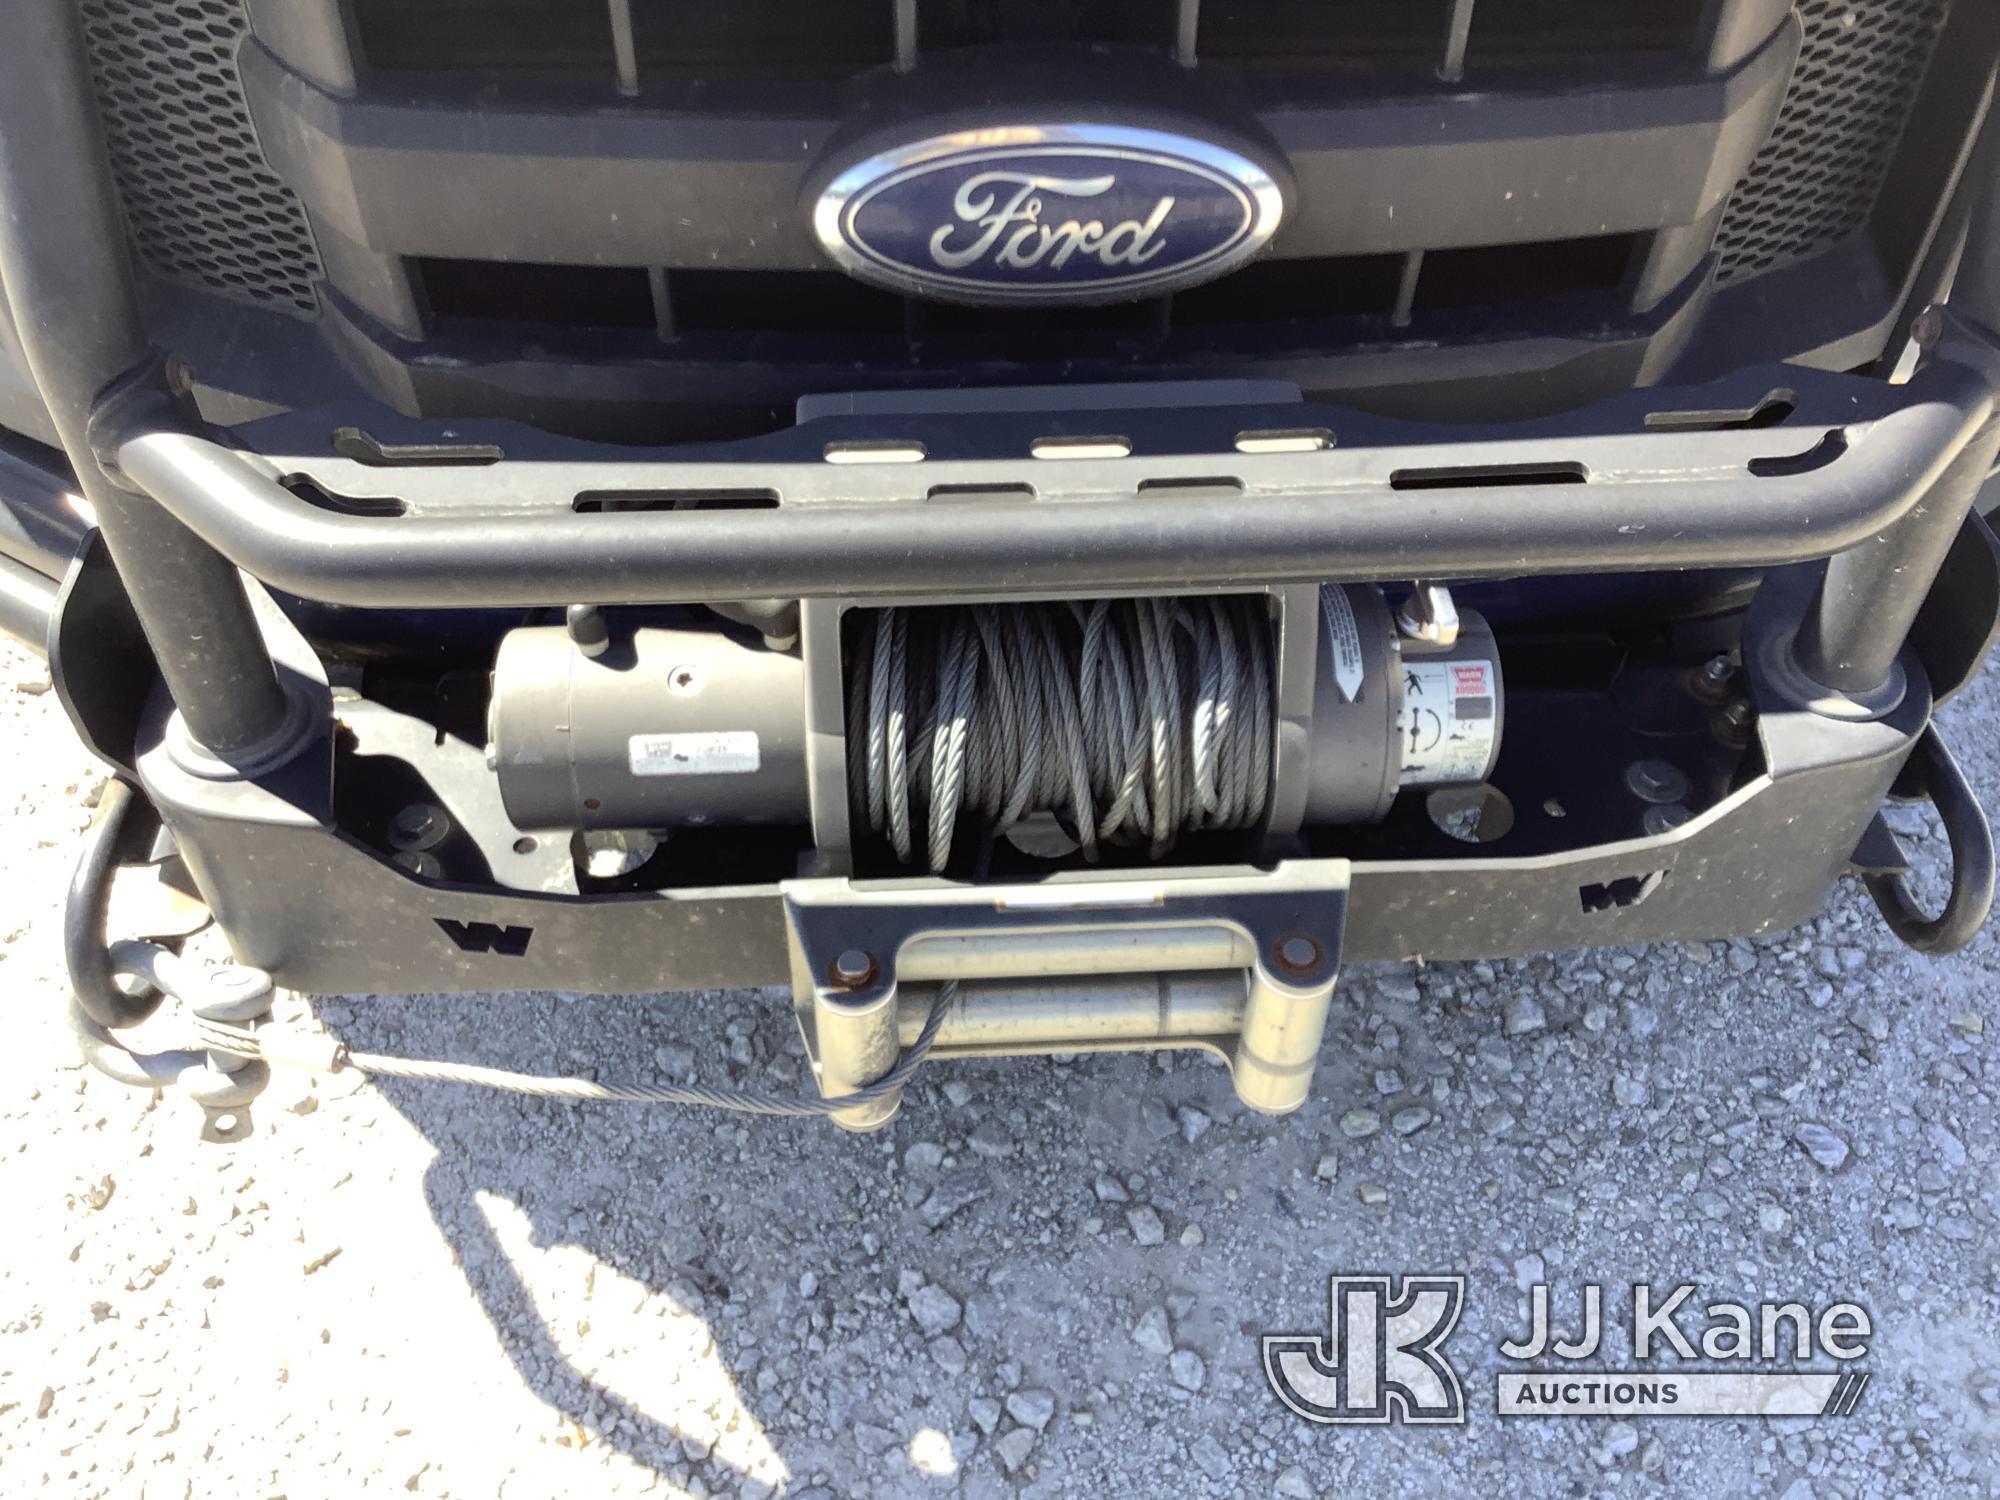 (Villa Rica, GA) 2015 Ford F150 4x4 Extended-Cab Pickup Truck Runs & Moves